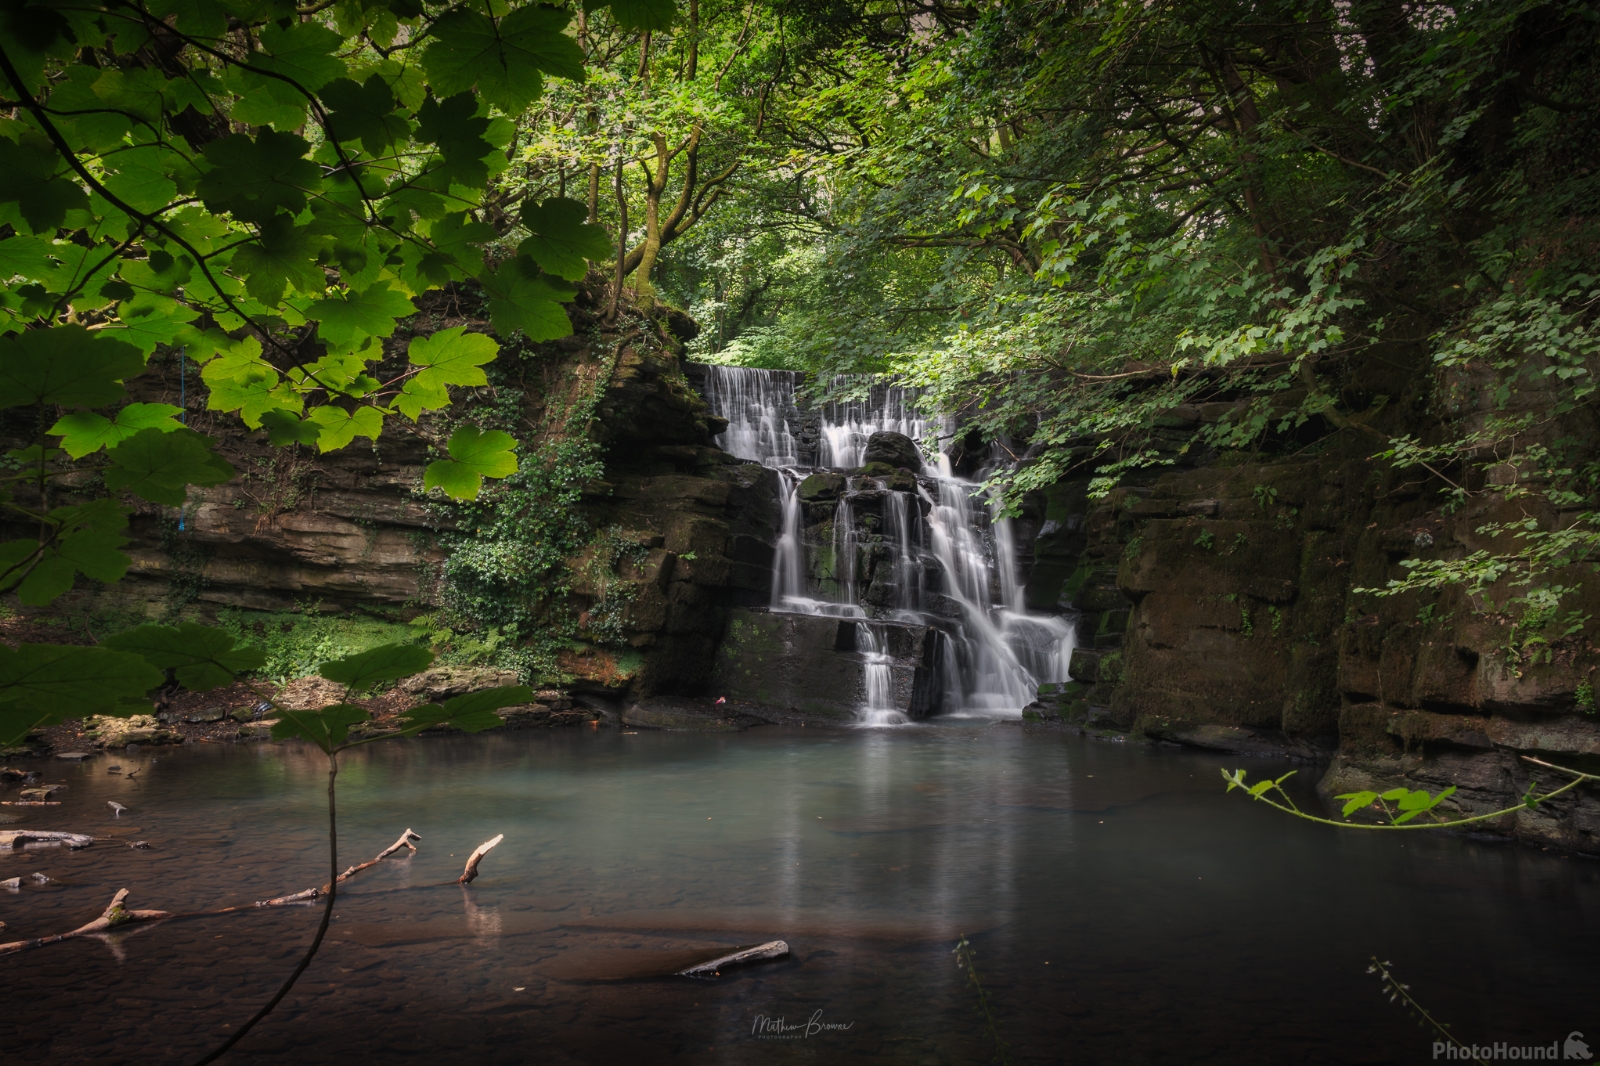 Image of Neath Abbey Waterfall by Mathew Browne